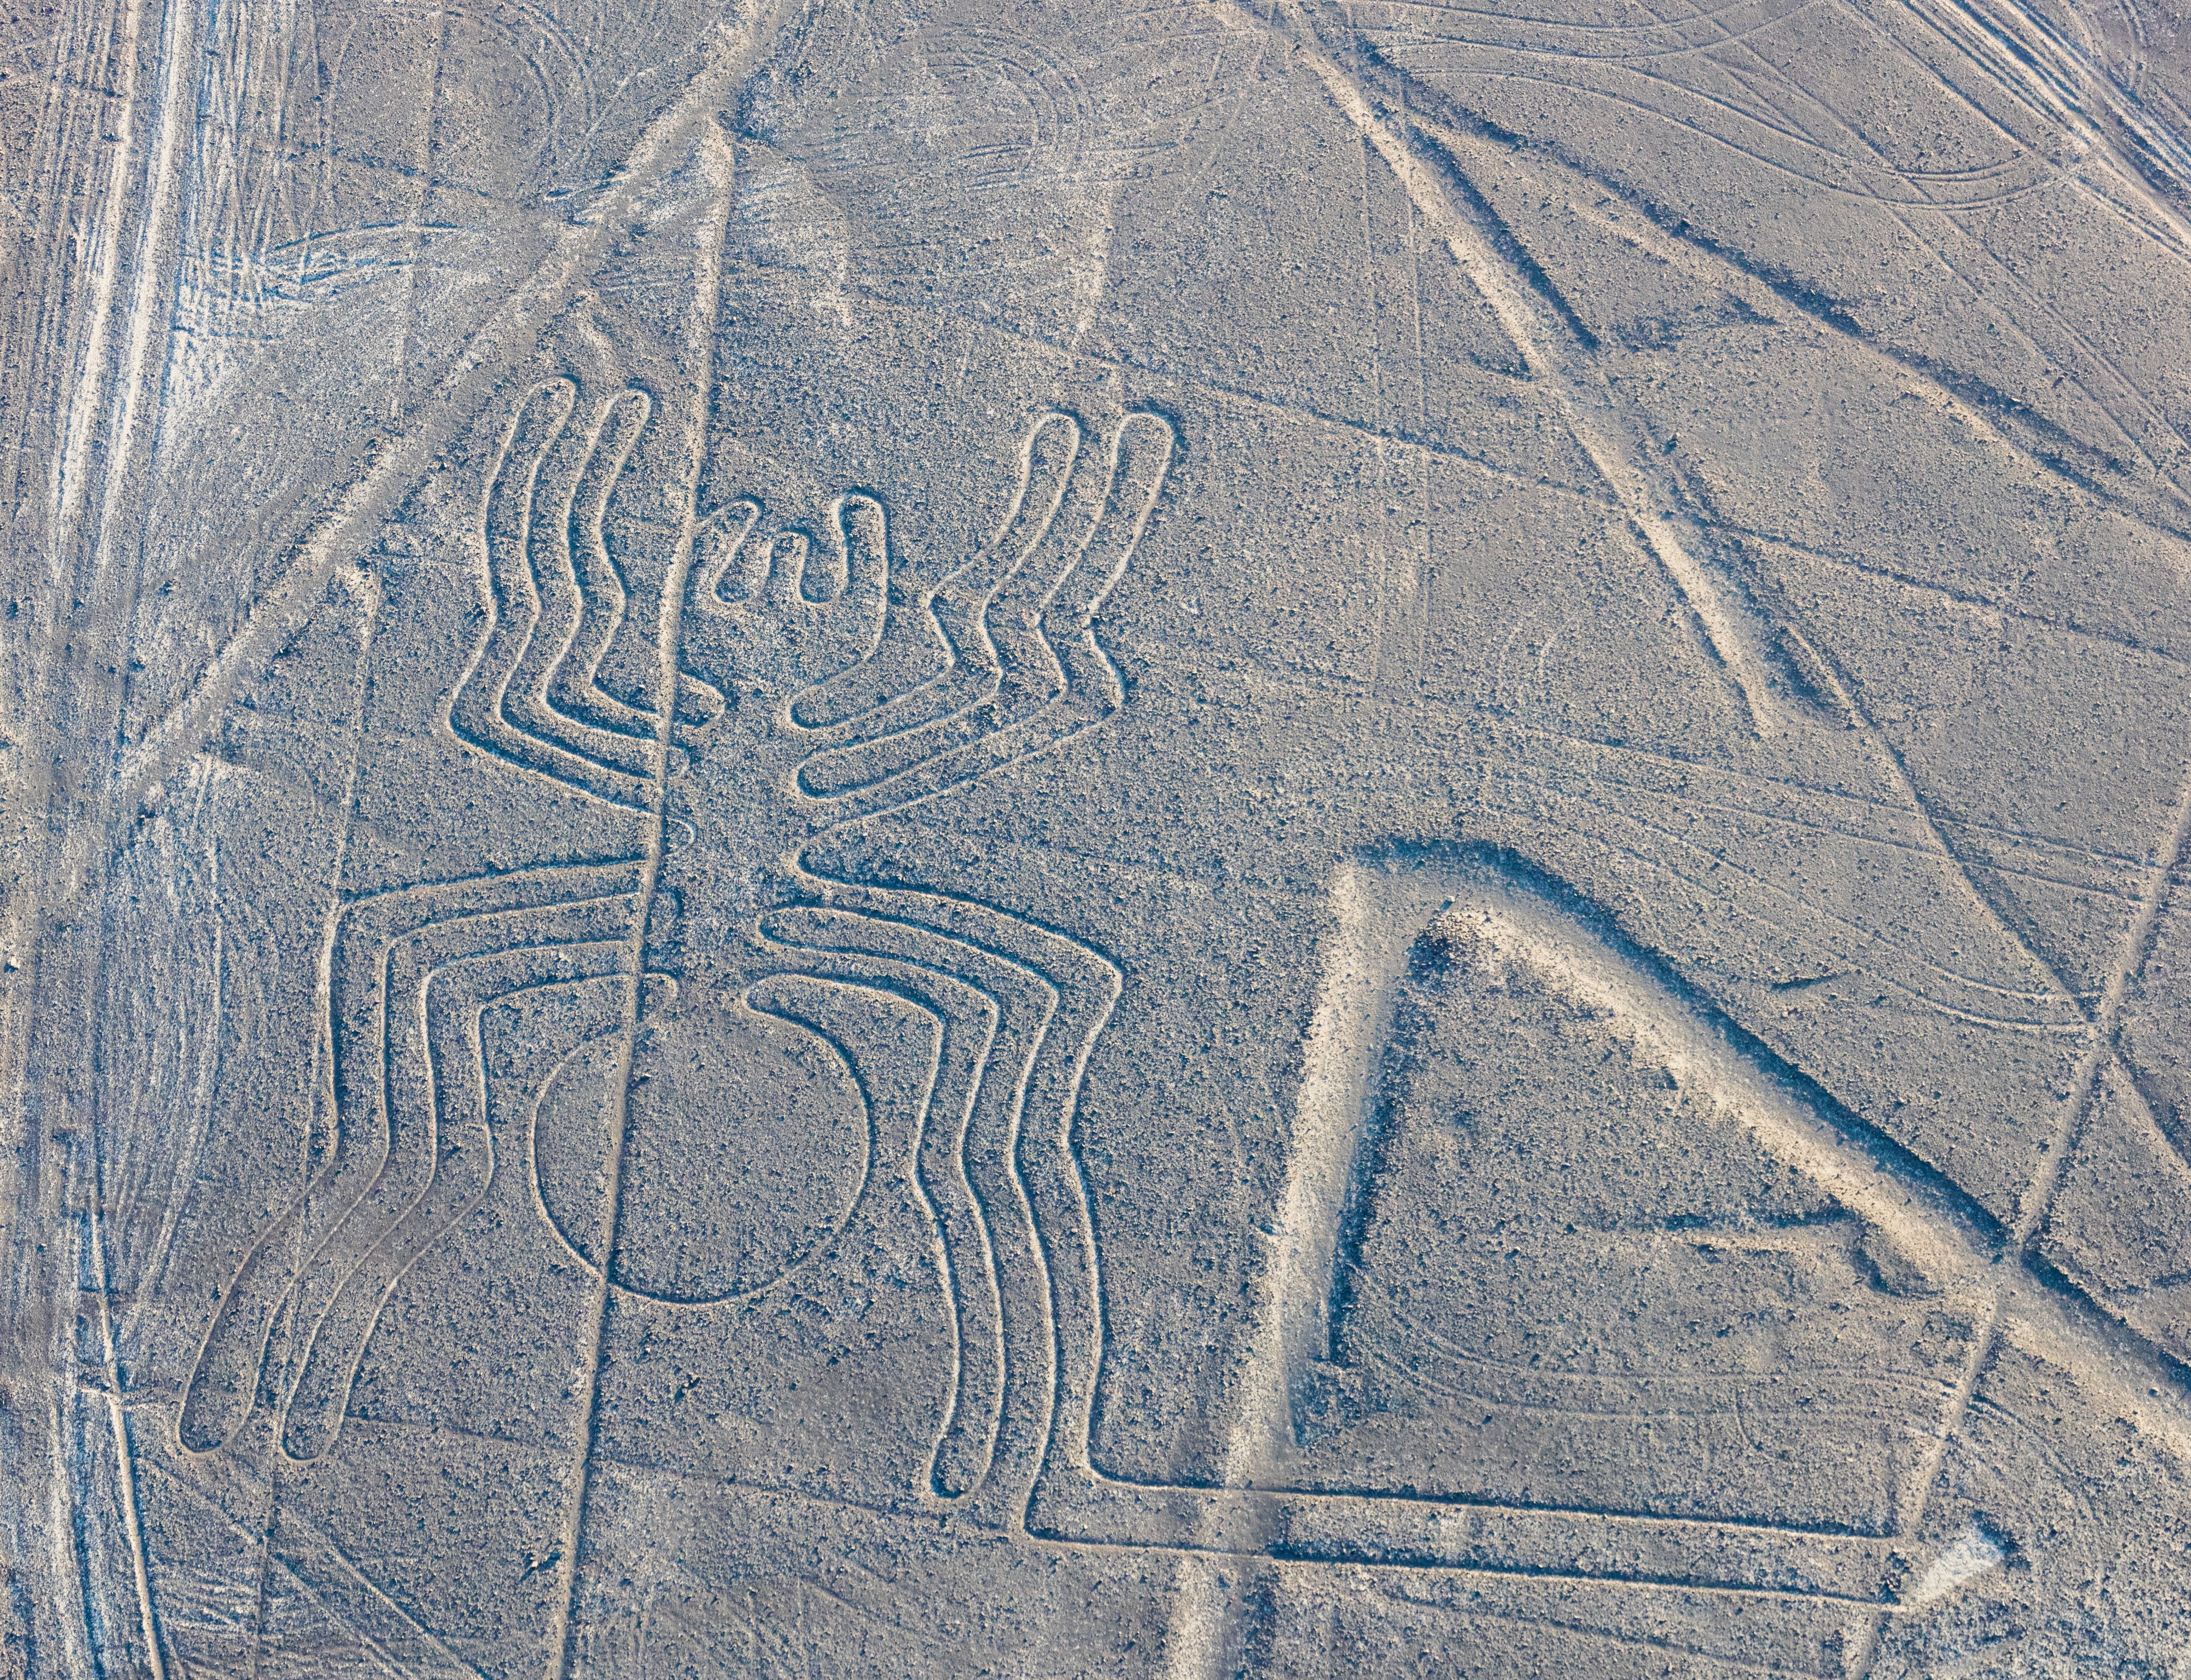 Líneas de Nazca, Nazca, Perú, 2015-07-29, DD 54